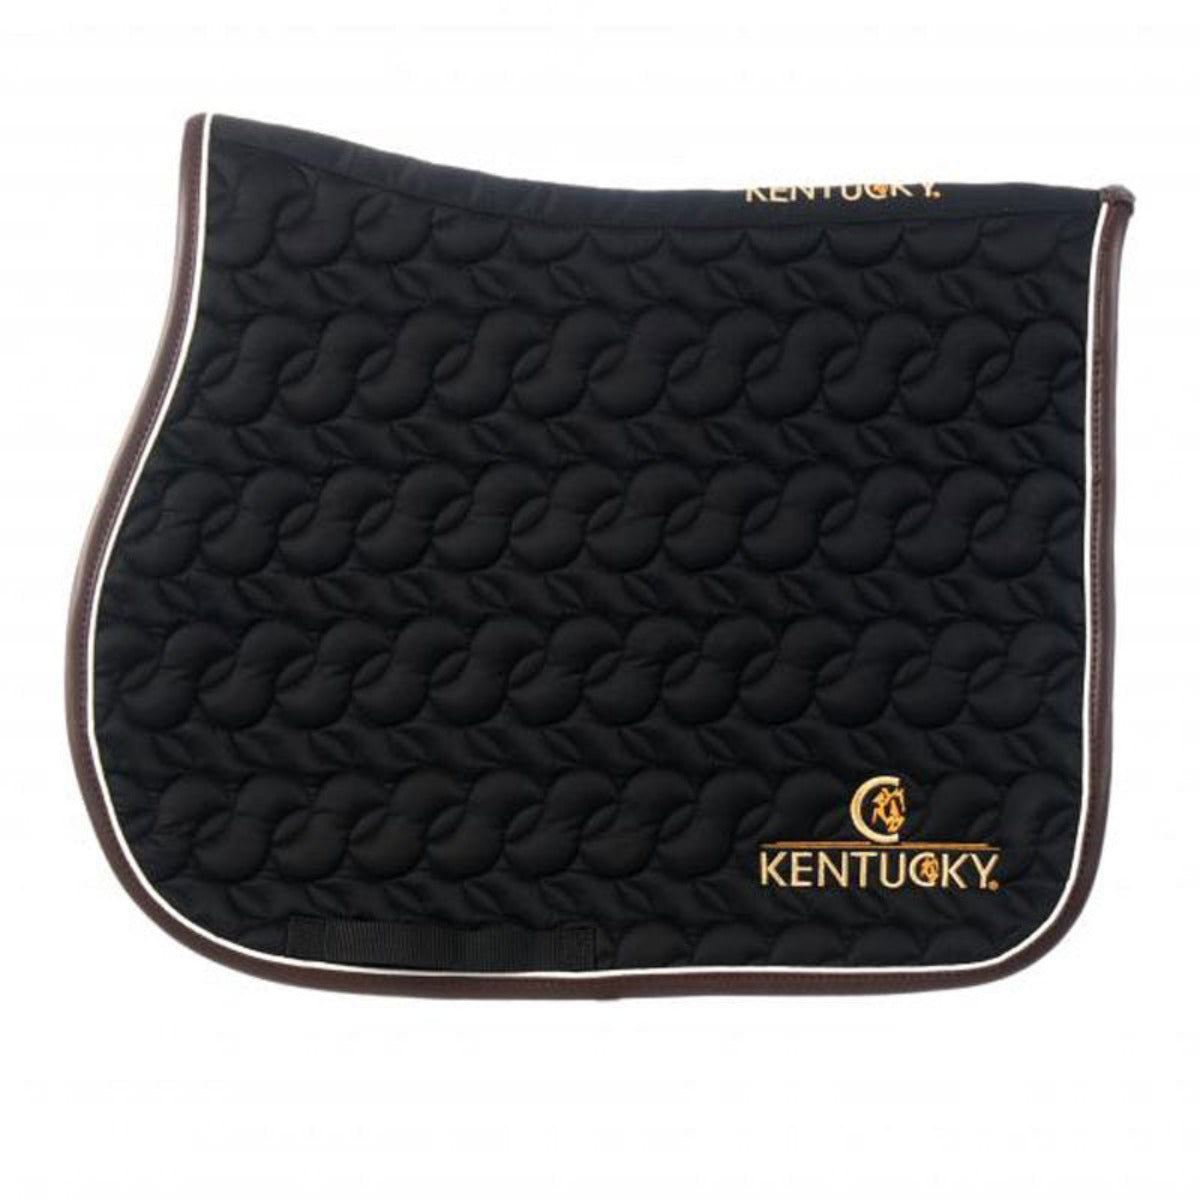 Kentucky Horsewear Saddle Pad